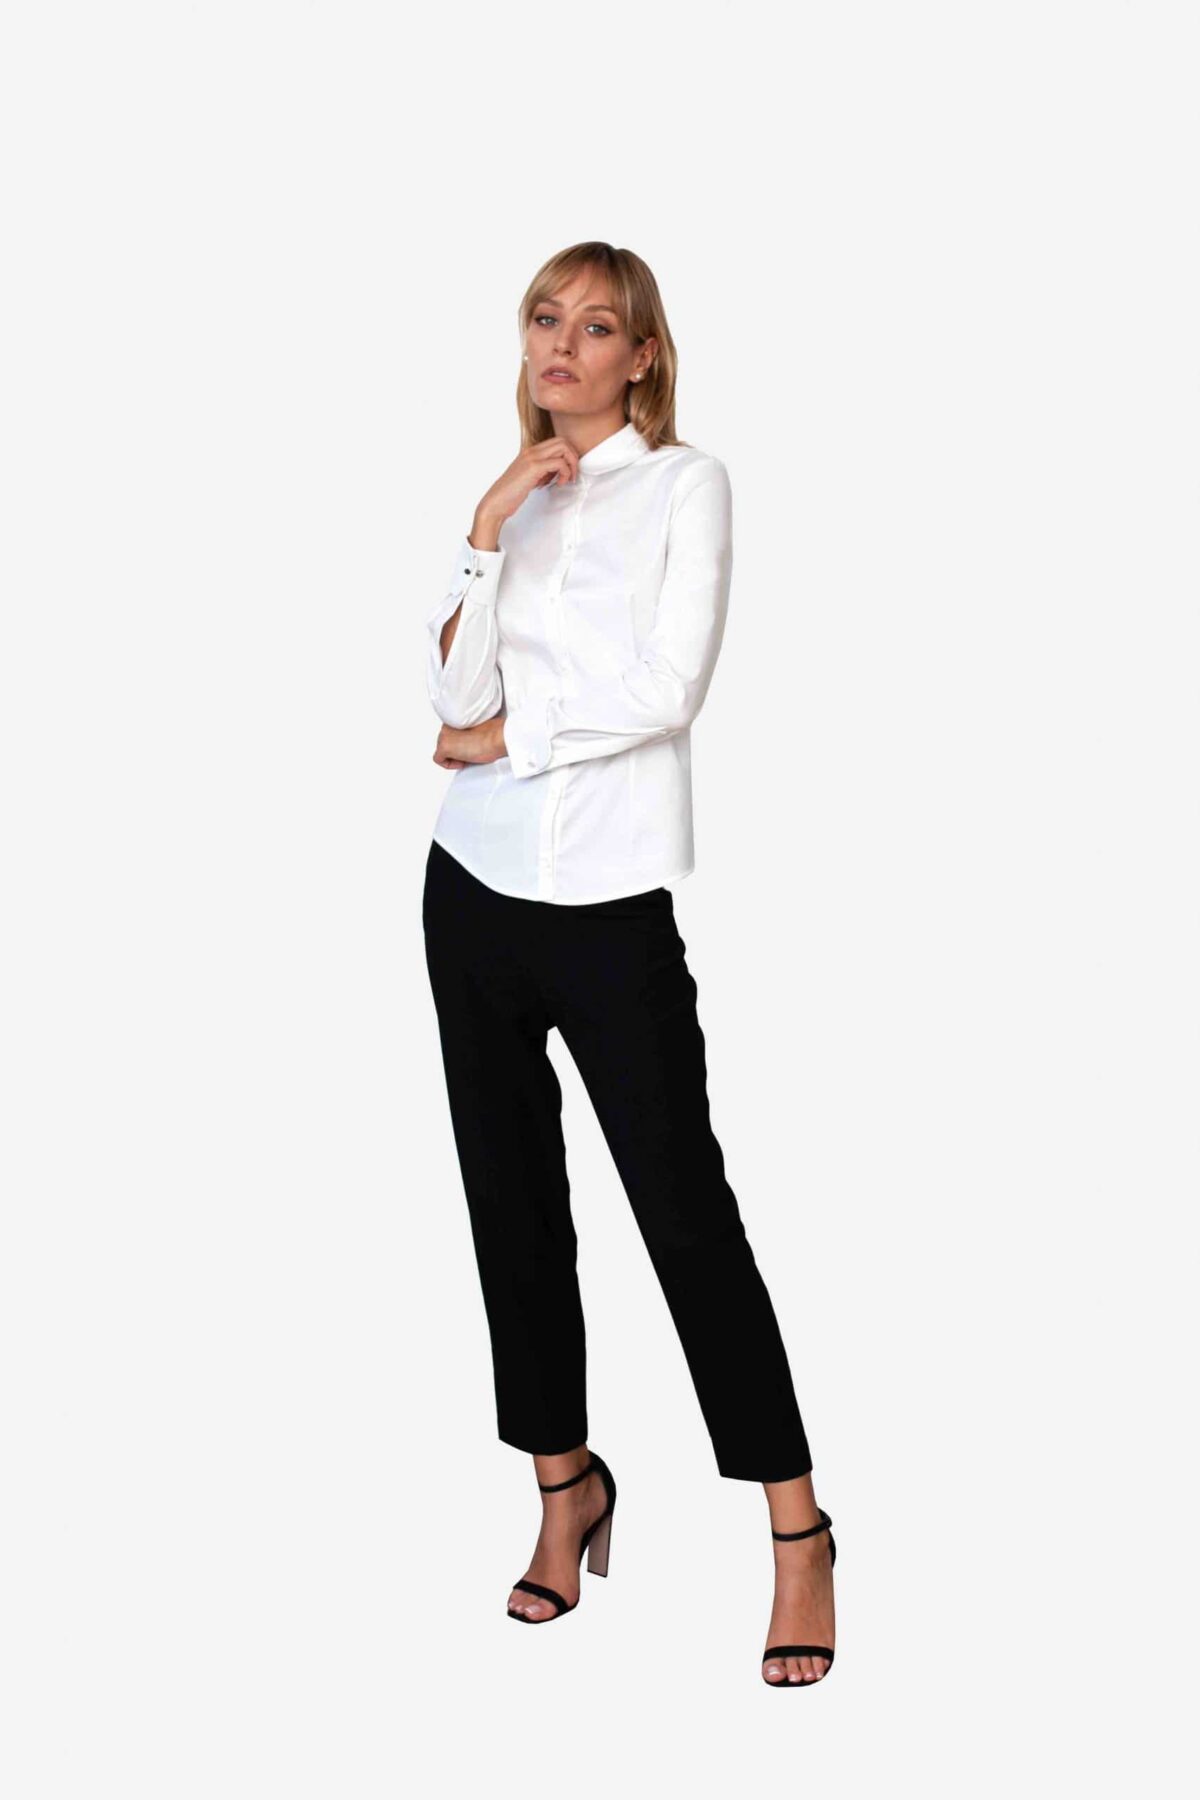 Bluse Michelle von SANOGE. Klassische Business Bluse in weiß. Made in Germany. Pflegeleicht, besonders atmungsaktiv, knitterarm.